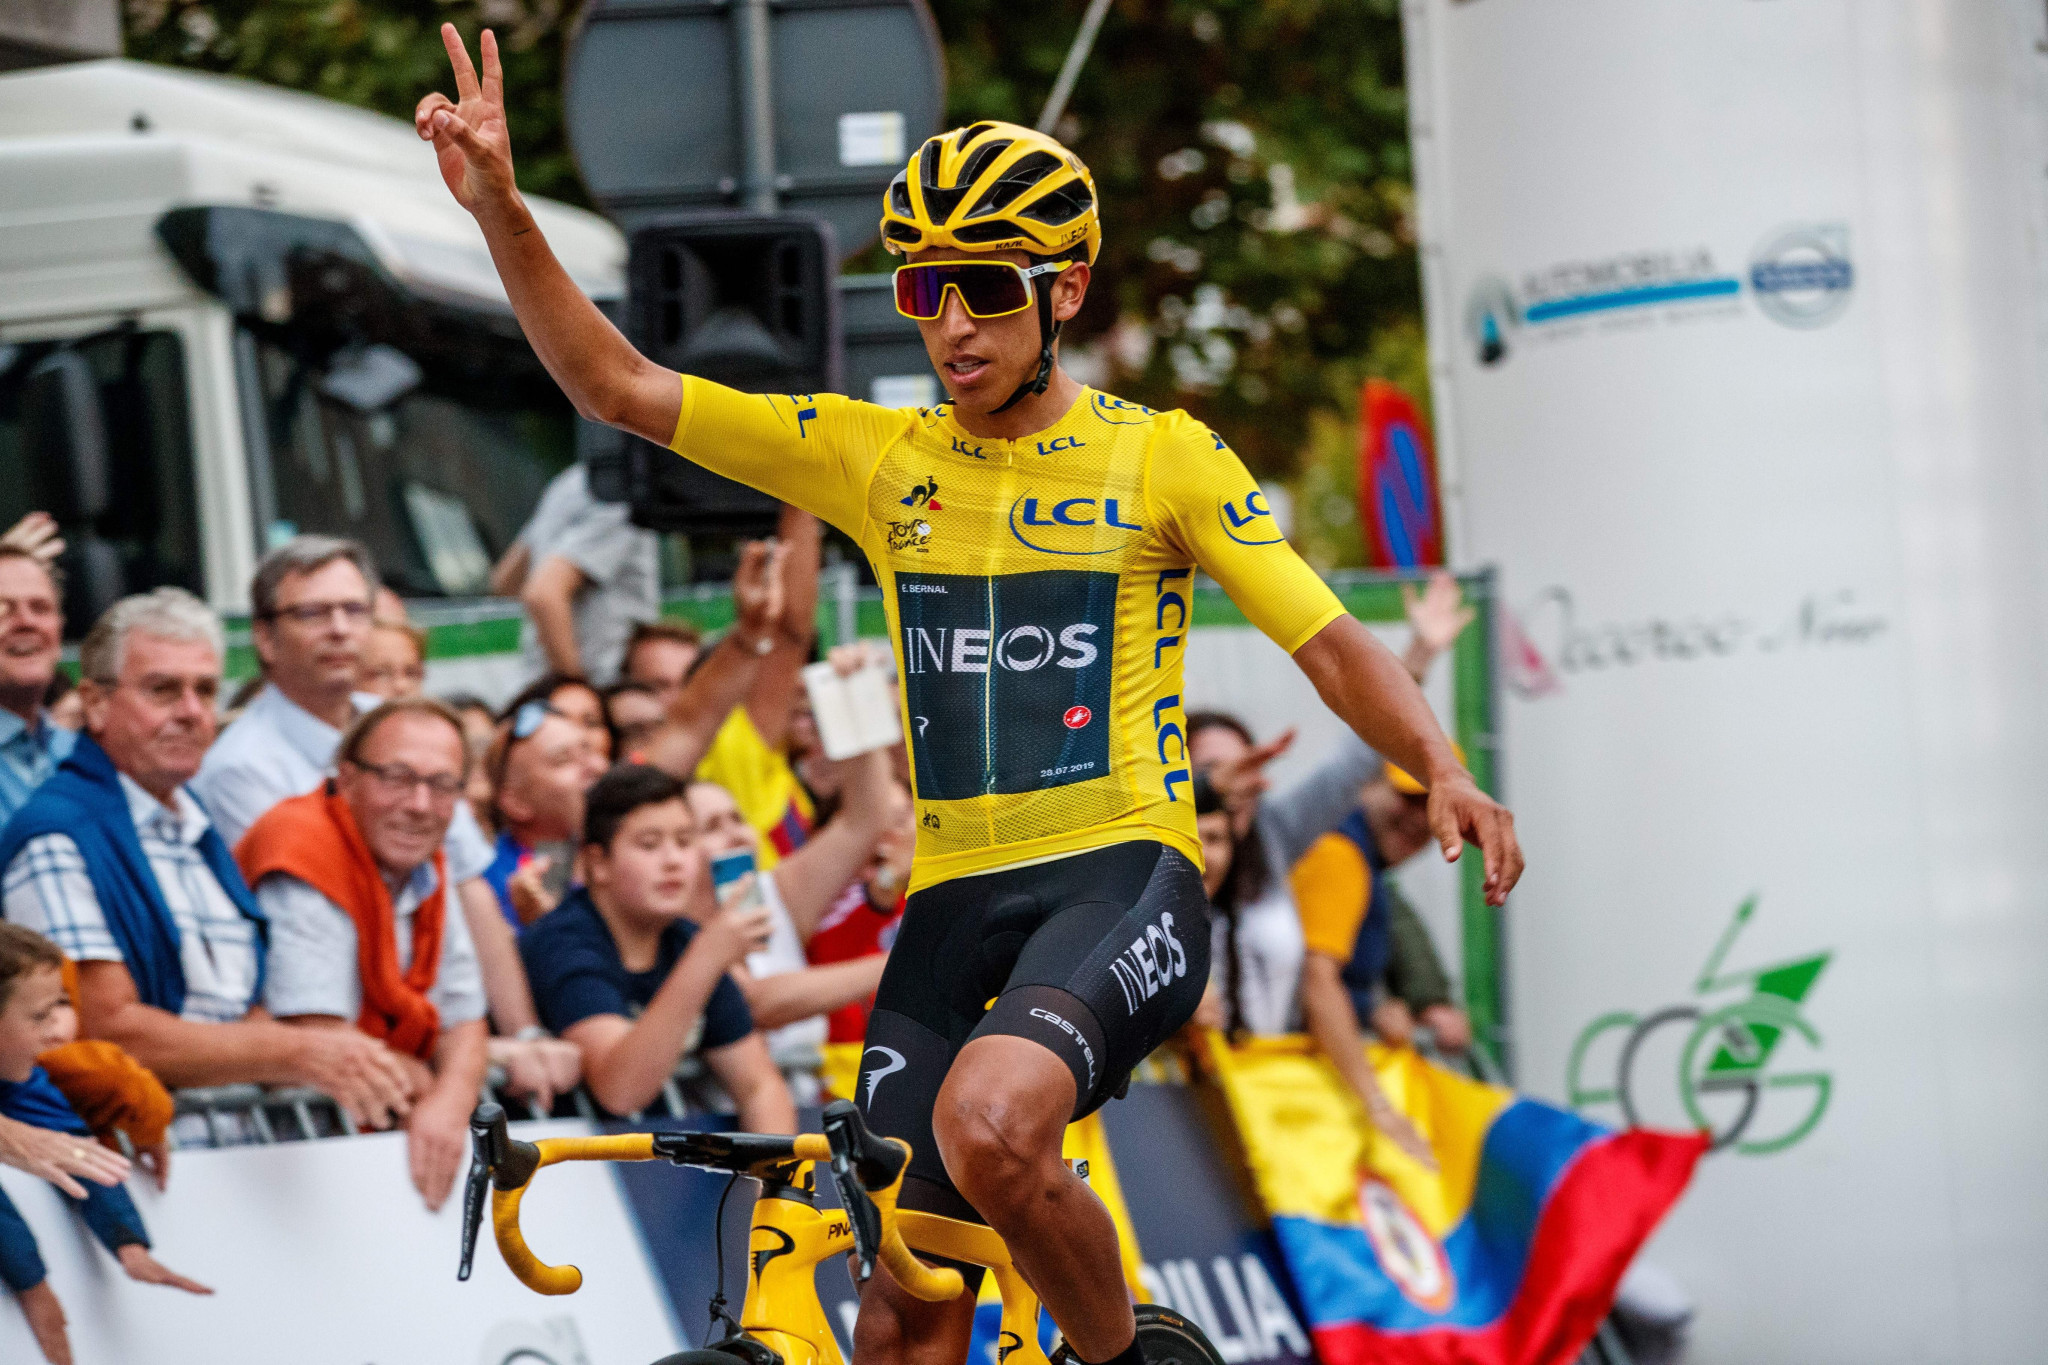 Tour de France winner Bernal headlines field for Clásica de San Sebastián